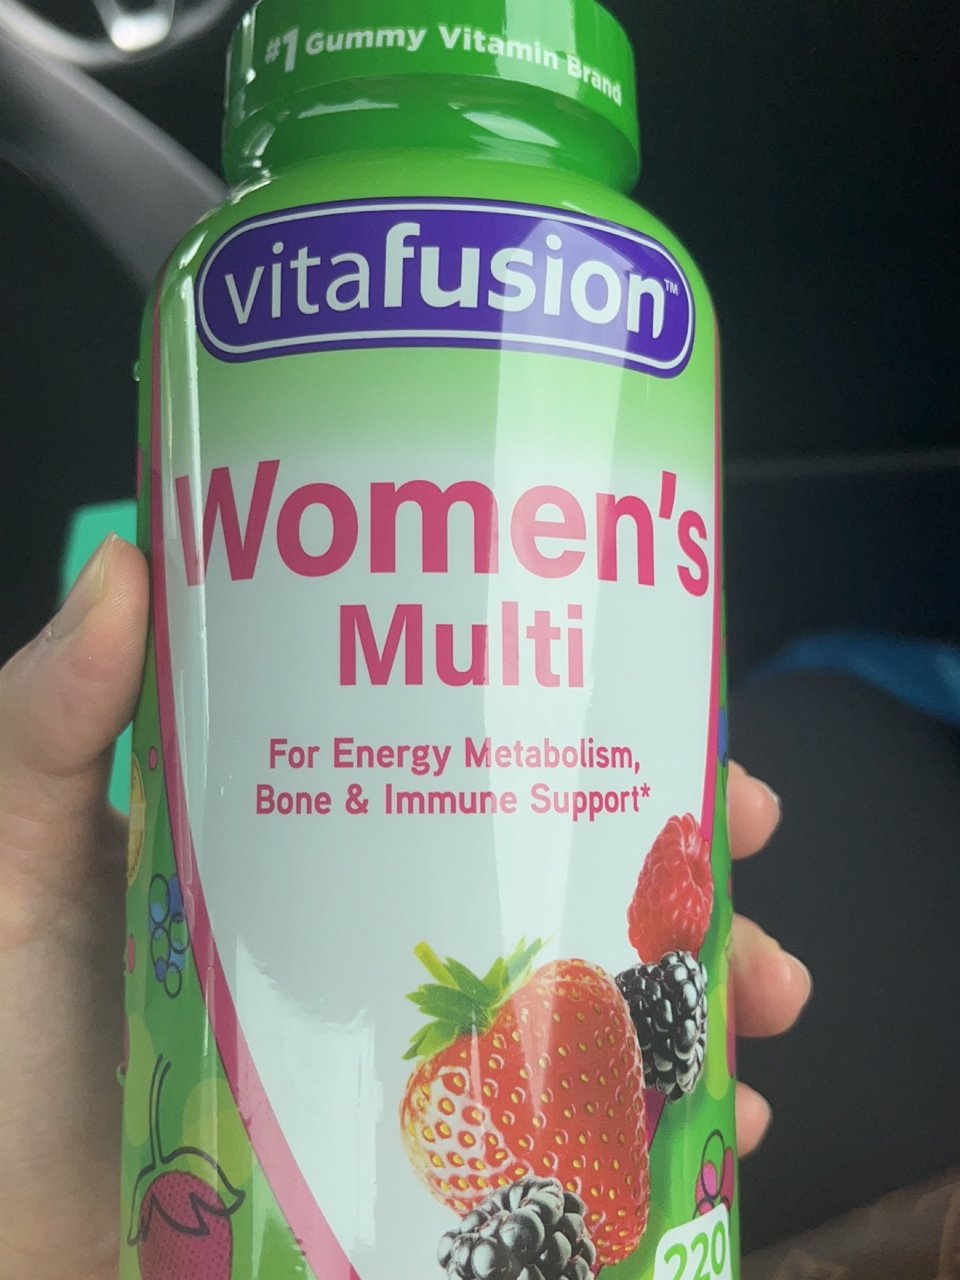 Costco woman vitamin...